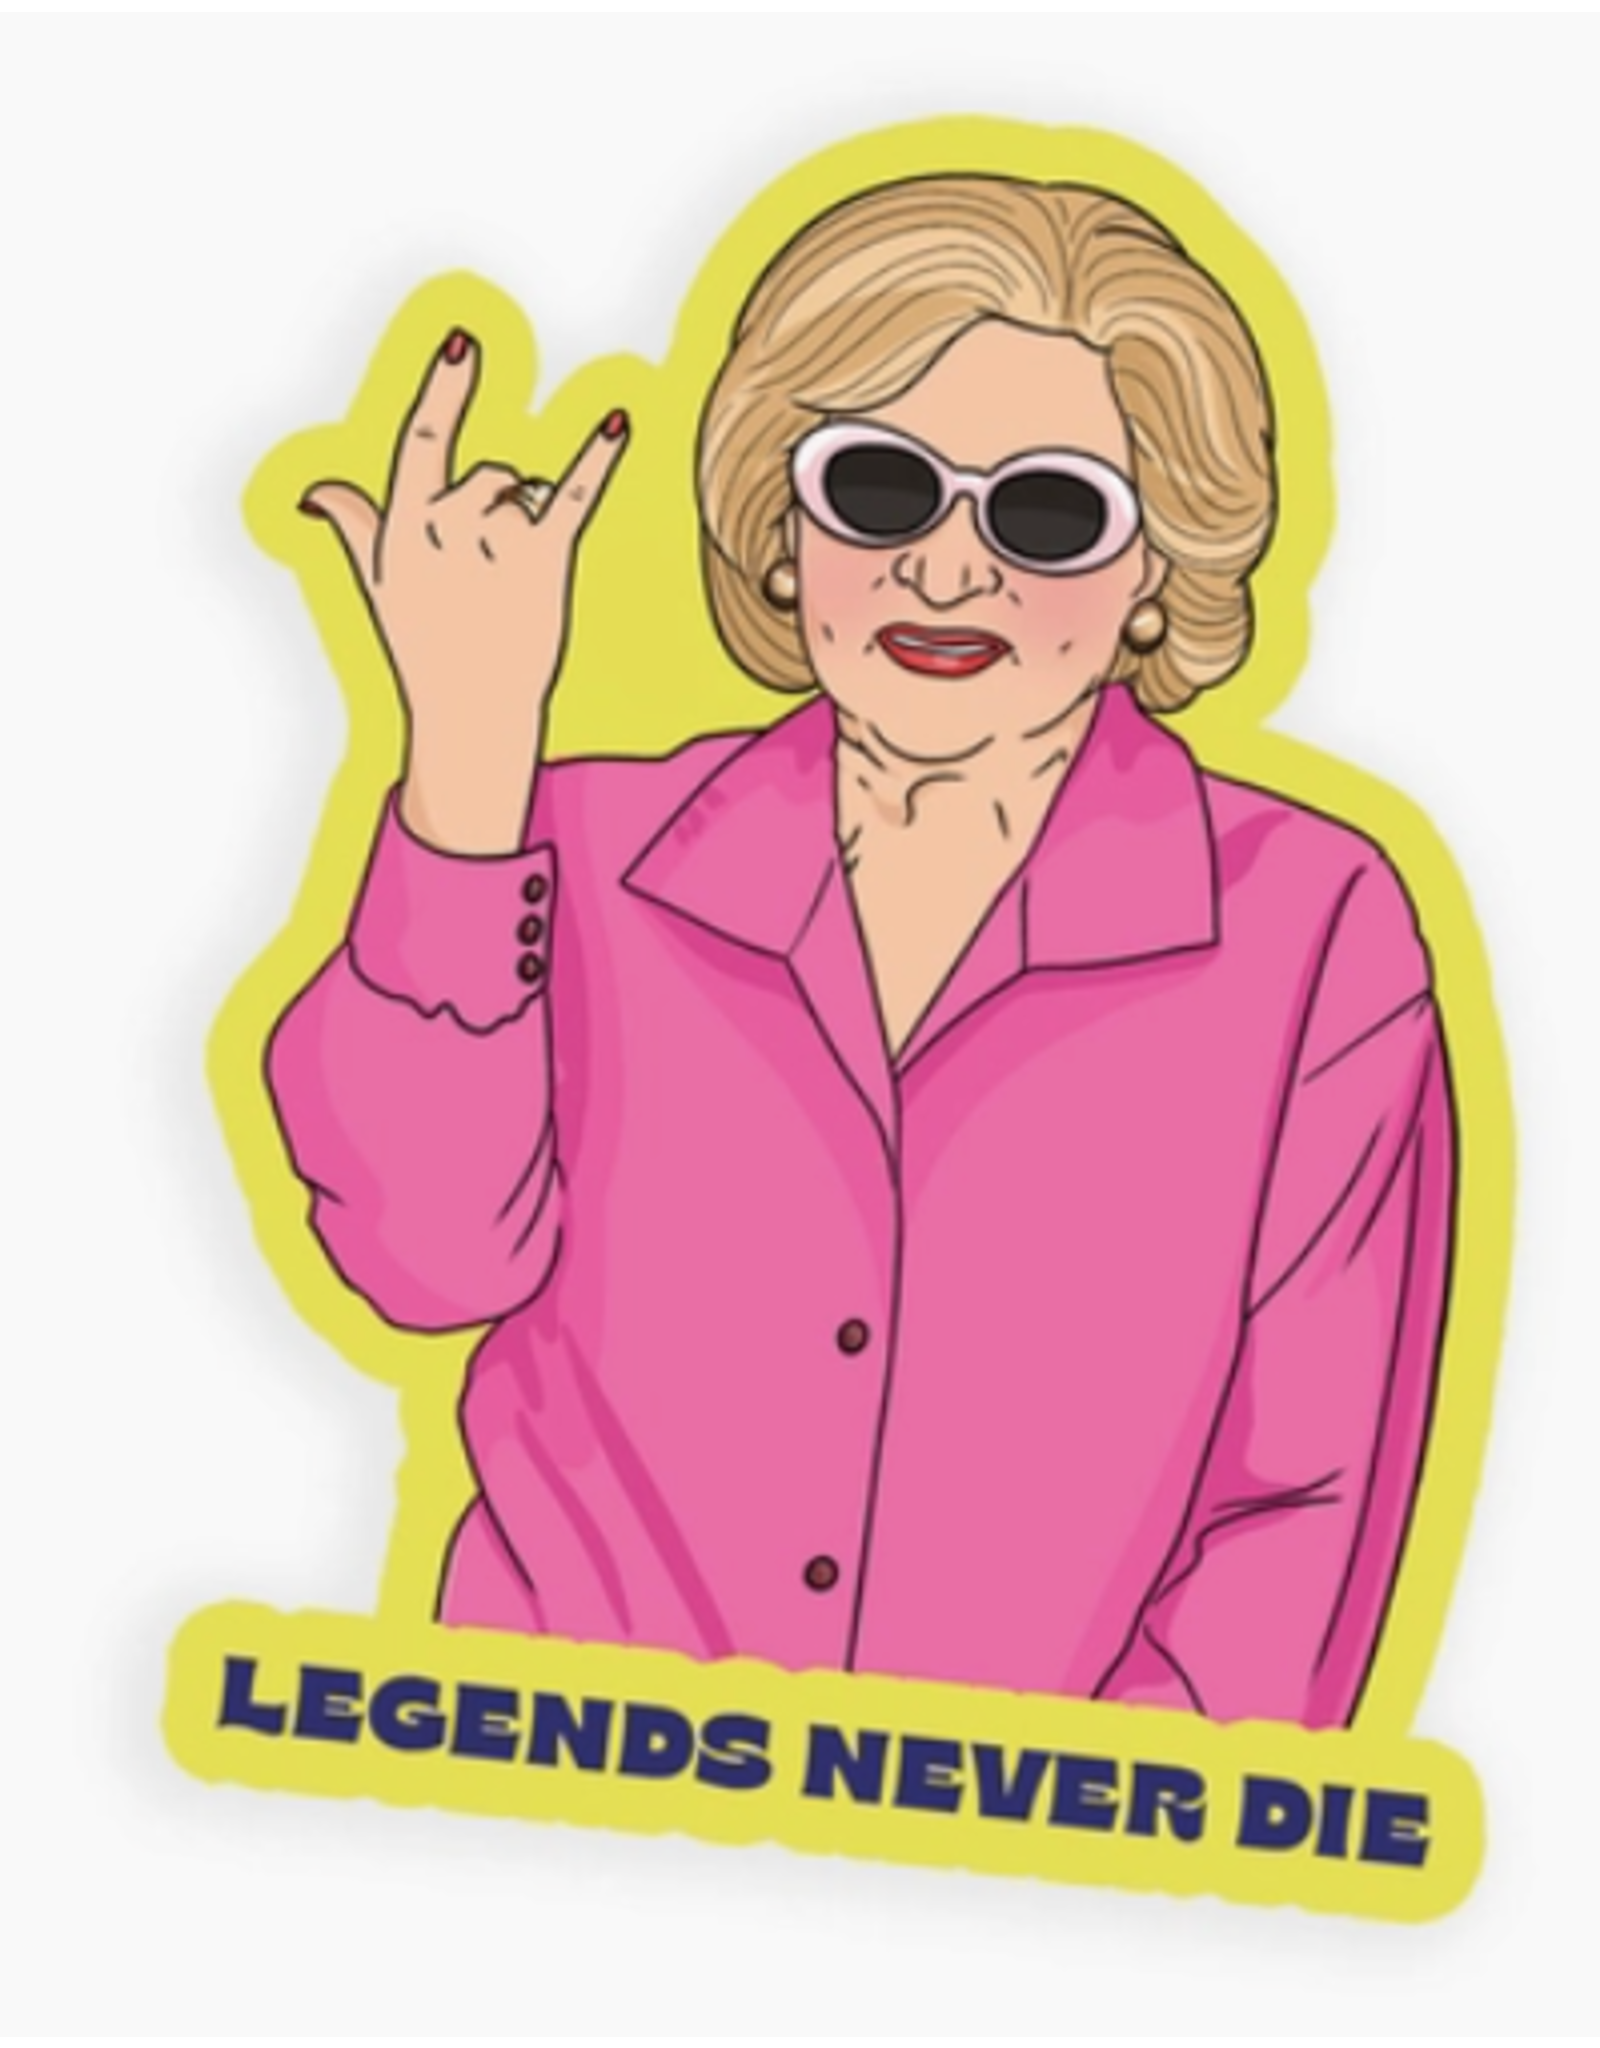 Betty "Legends Never Die" Sticker